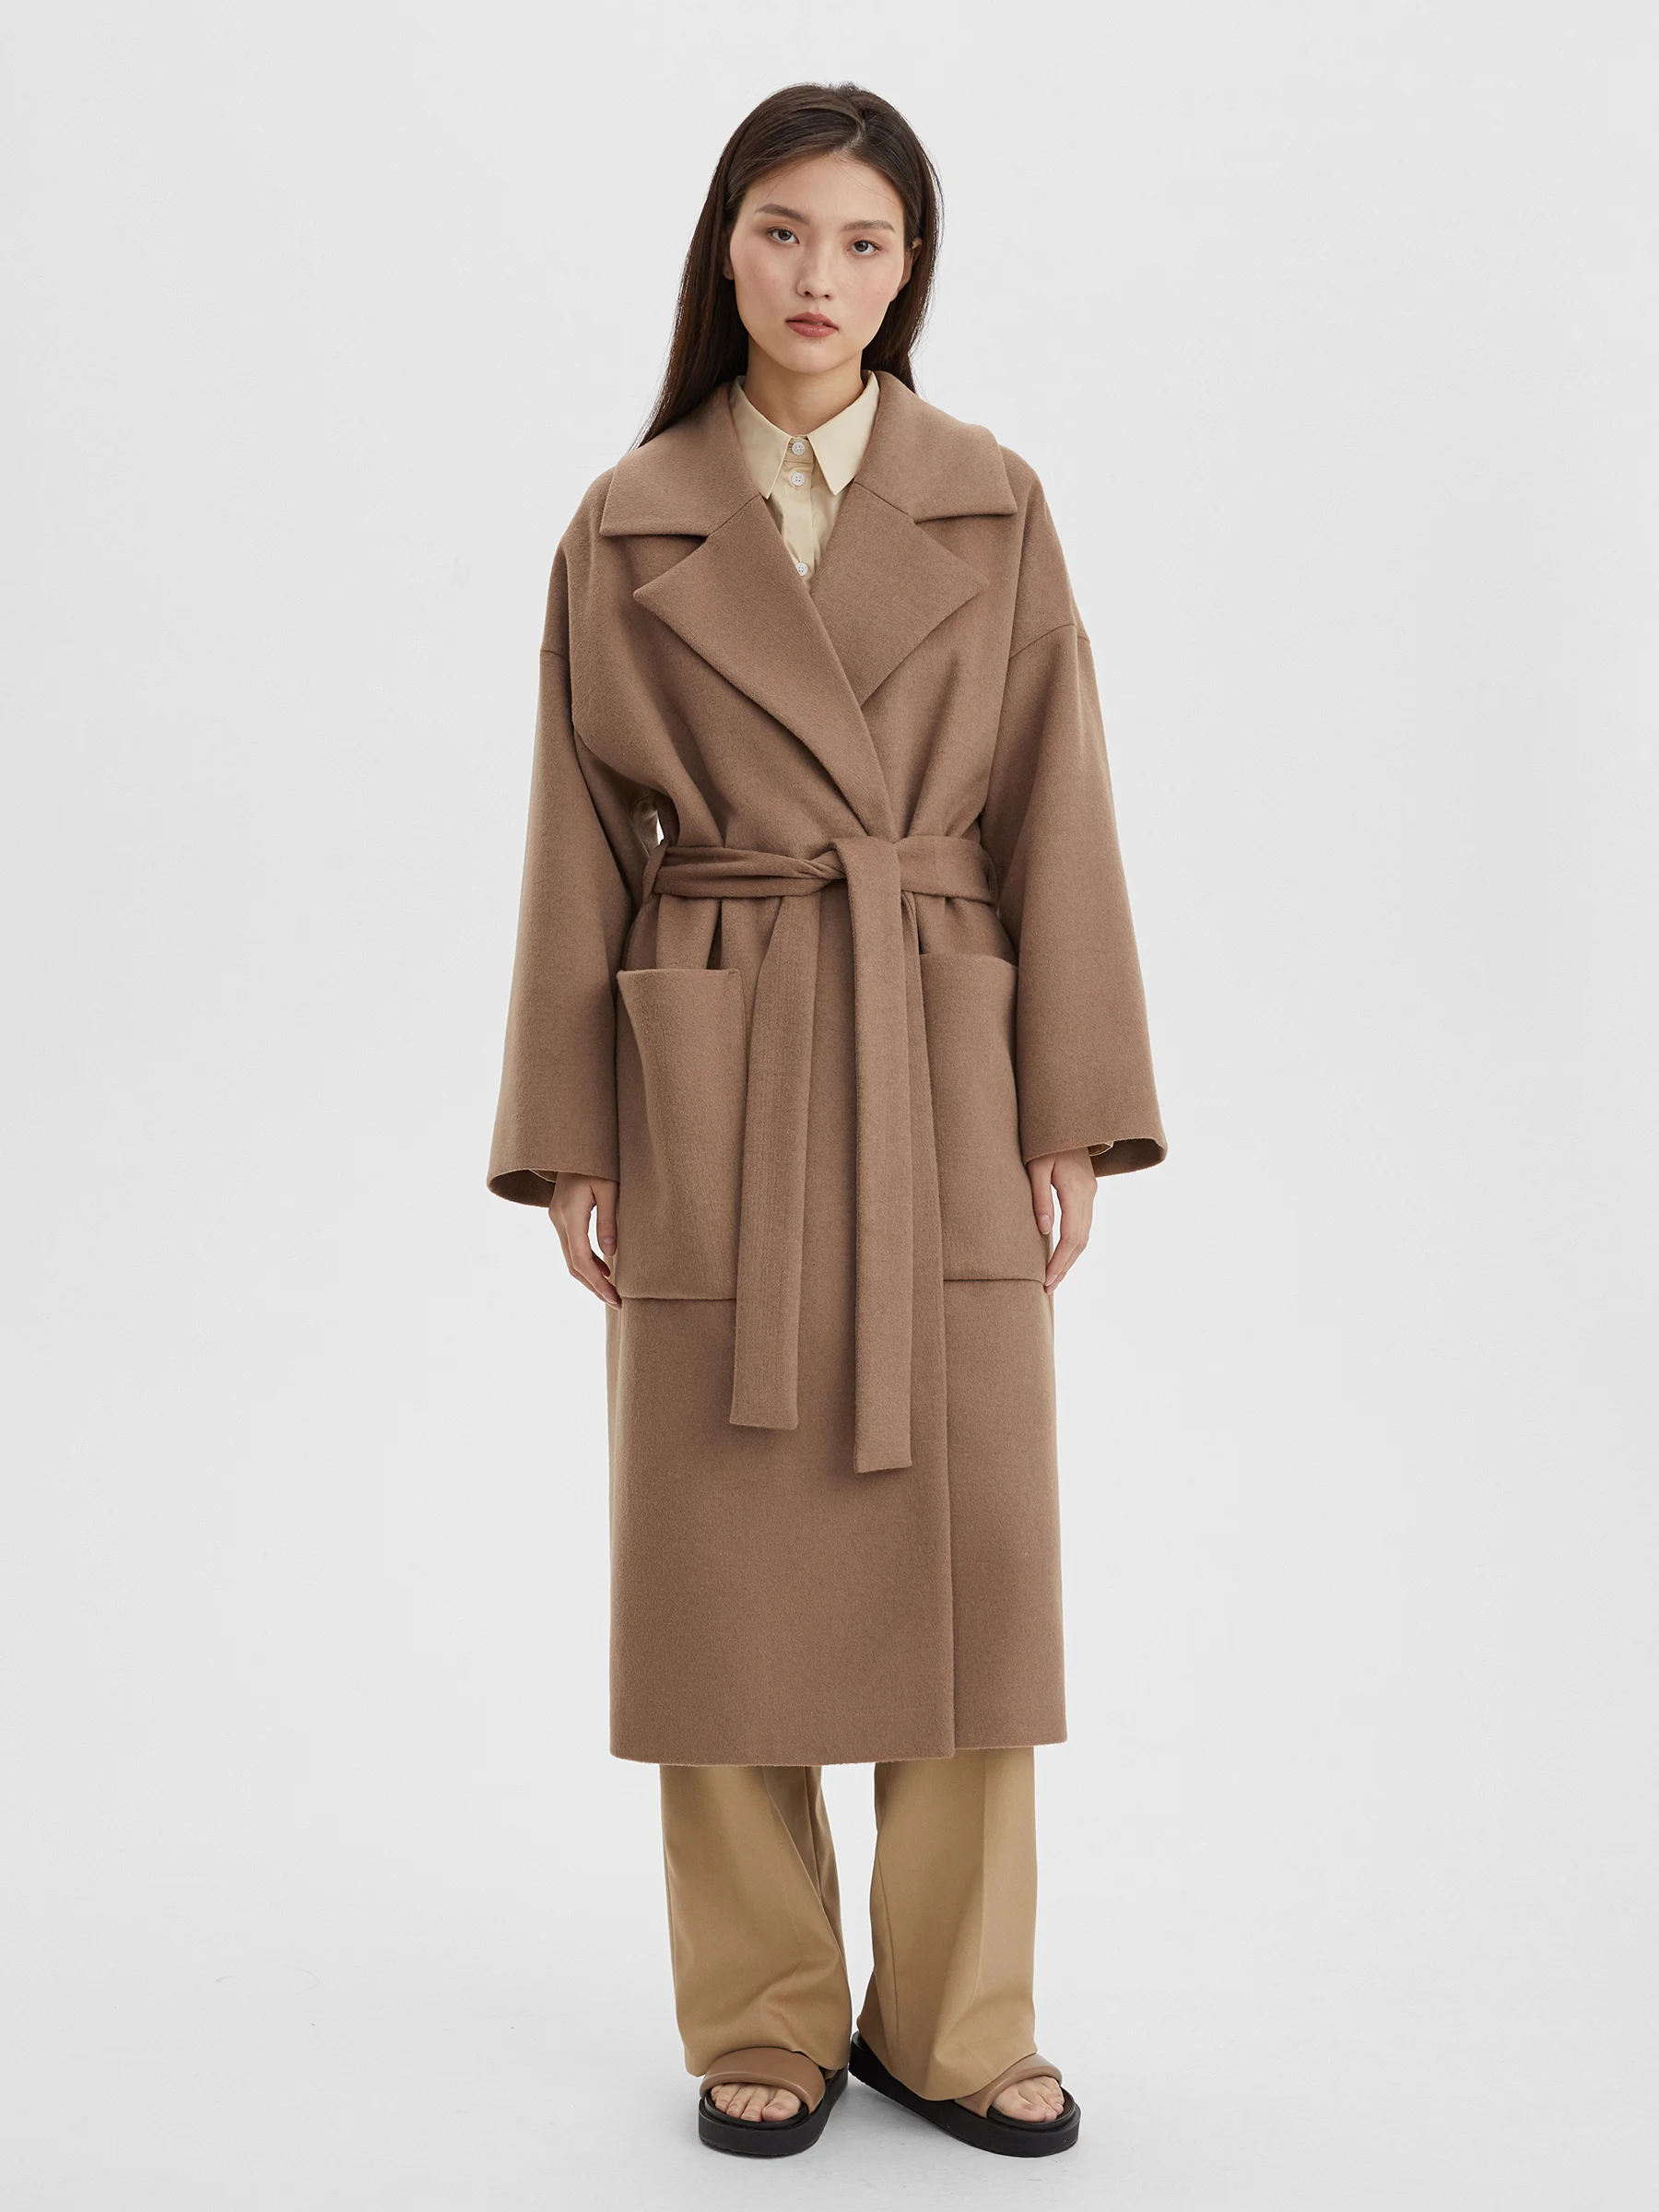 Пальто женское длинное с объемными карманами и поясом, цвет – бежевый женское шерстяное пальто с поясом теплое двубортное пальто средней длины с отложным воротником в корейском стиле осень зима 2021